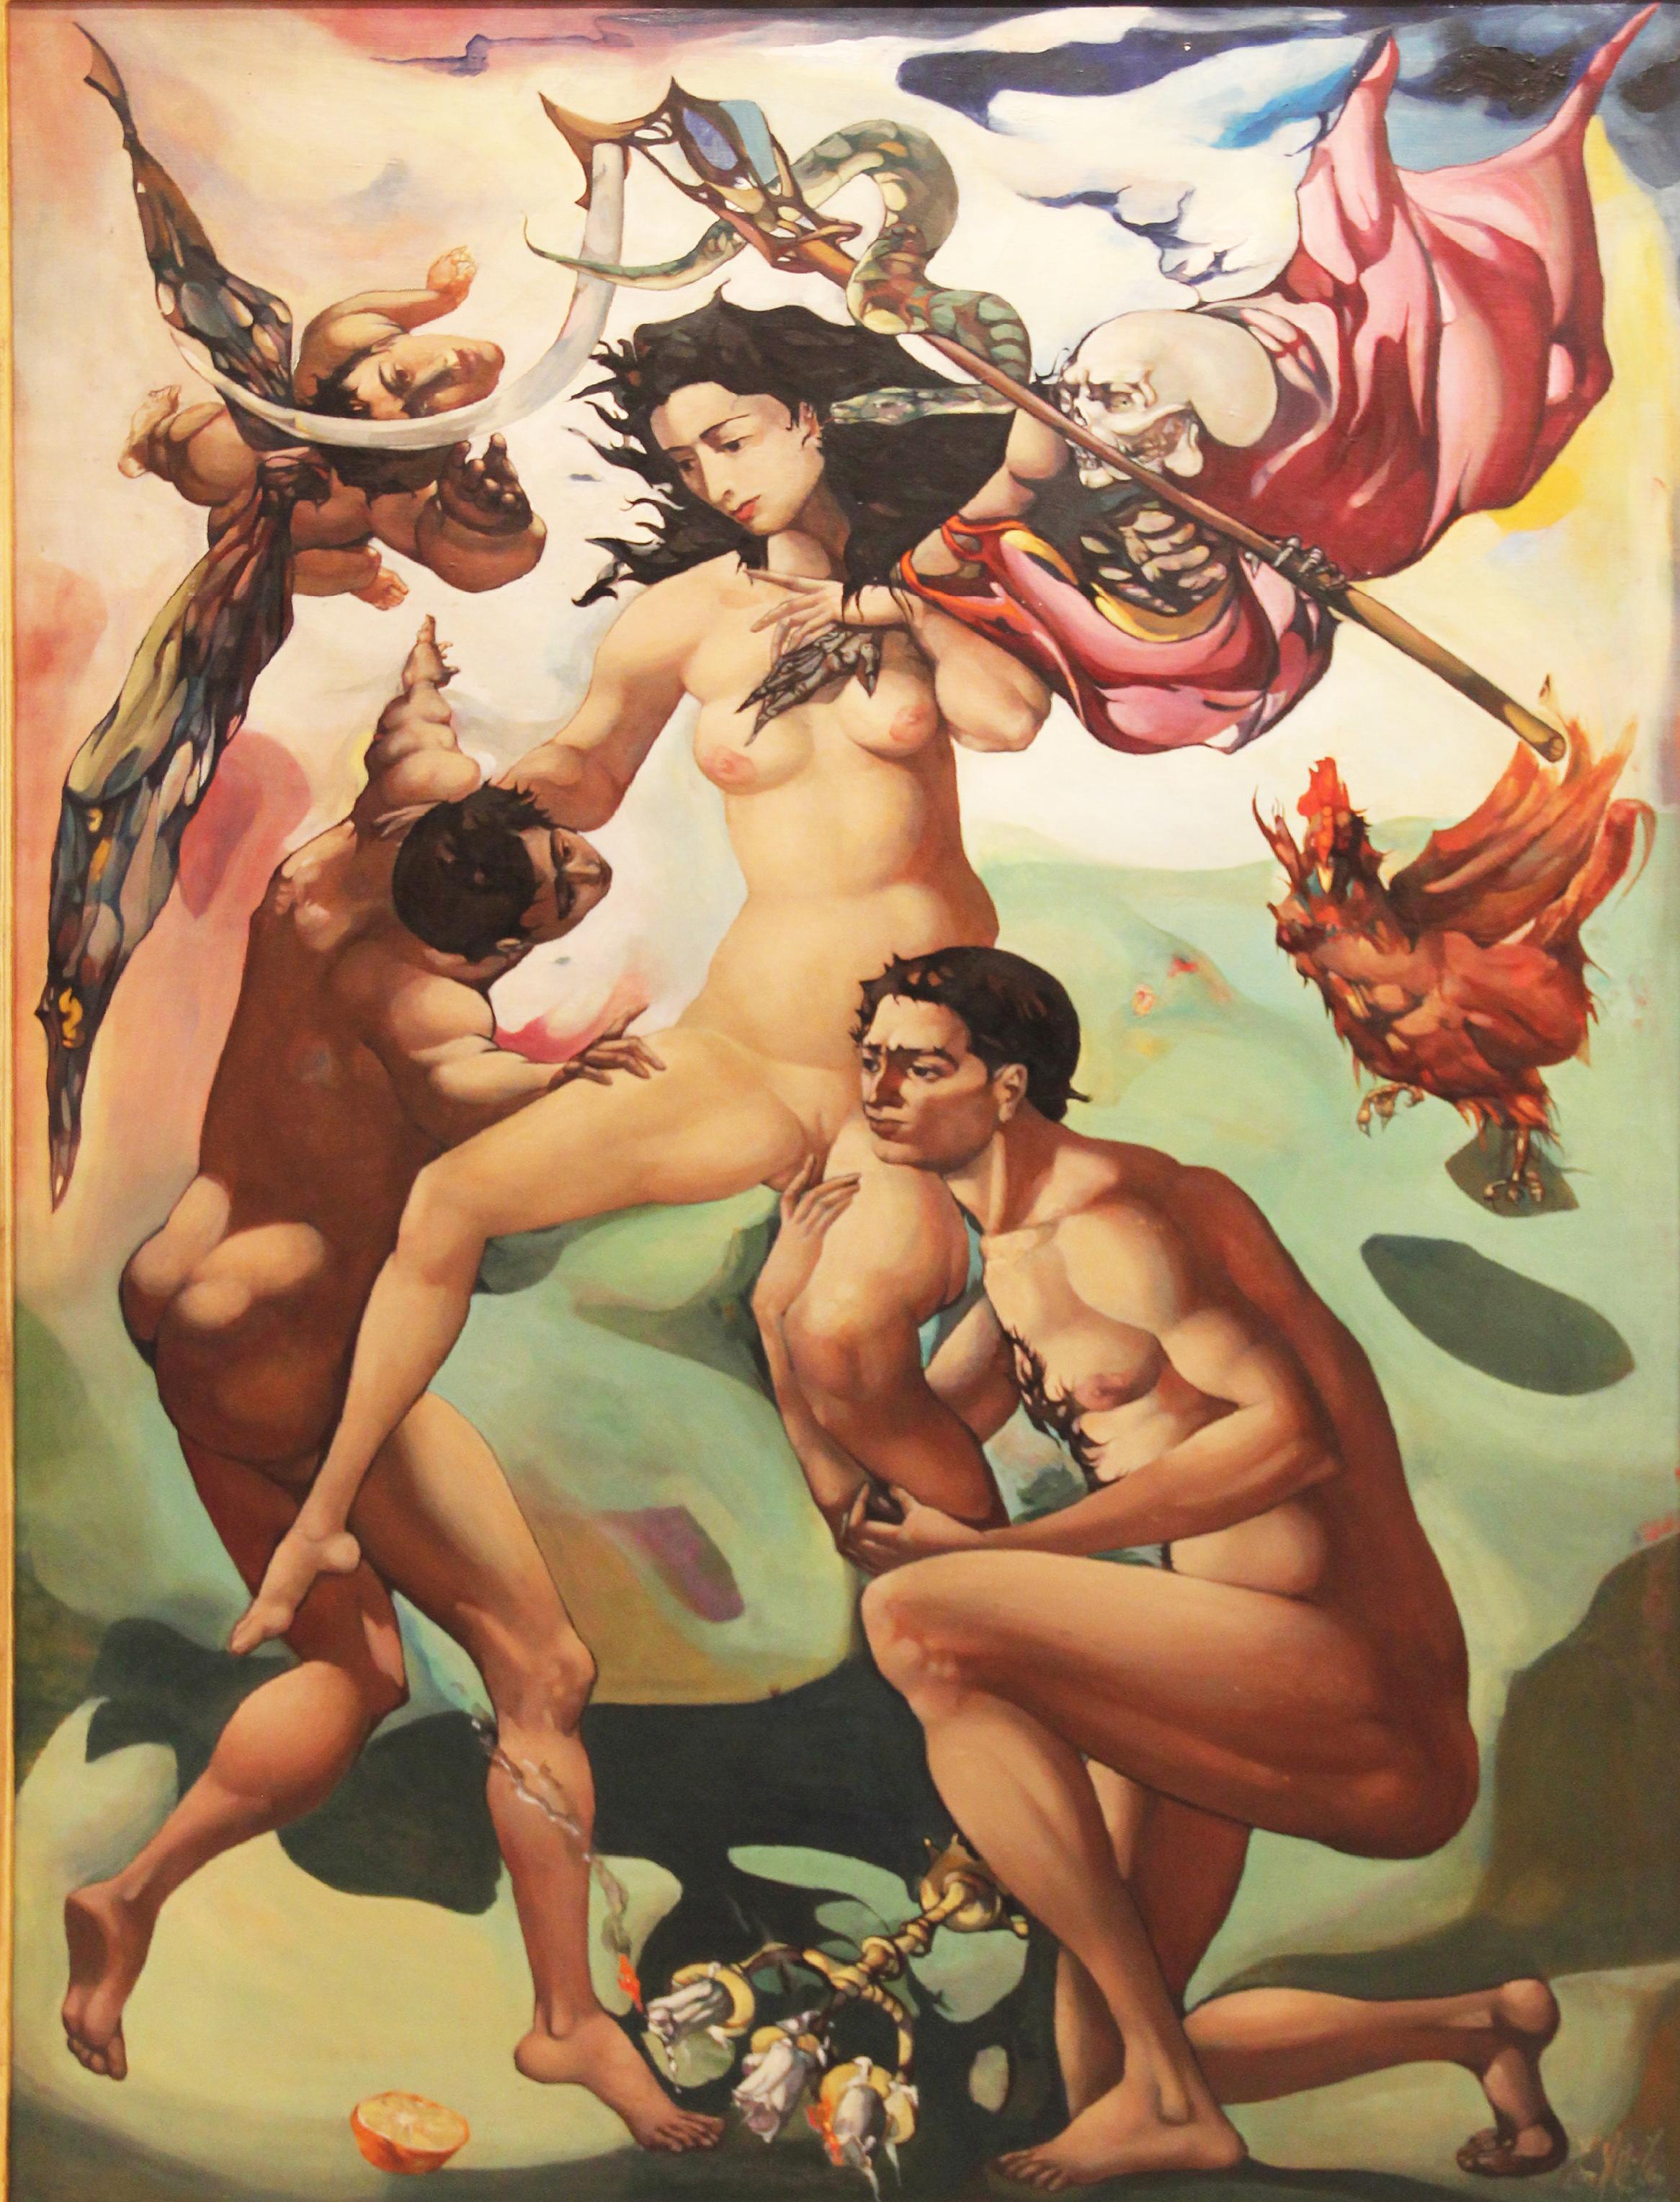 Venus aus den Händen des Todes herausgegeben, surrealistisch, Akt, 1959, Öl auf Leinwand (Surrealismus), Painting, von Leon Kelly